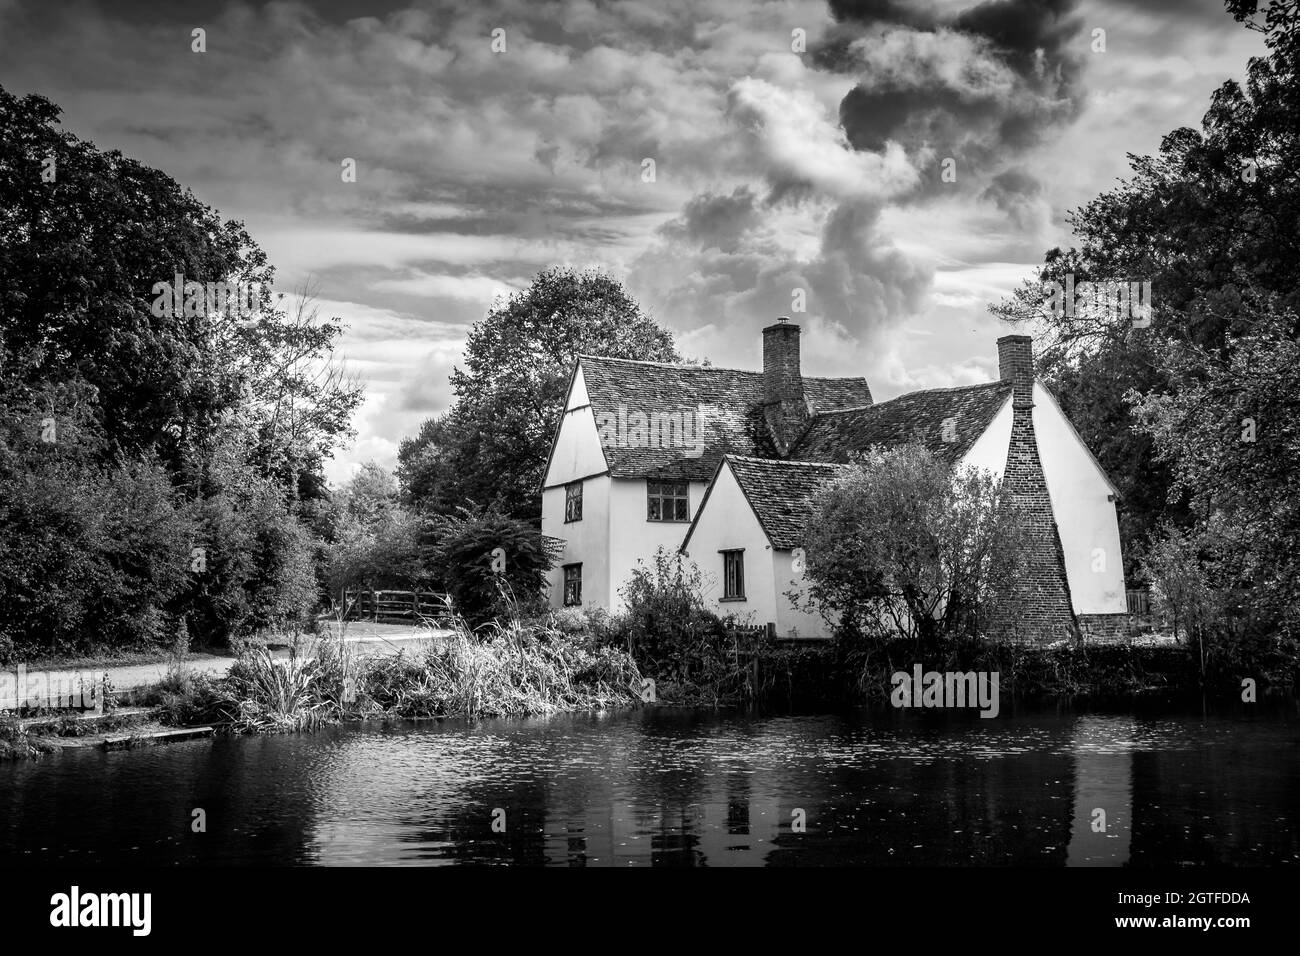 Image en noir et blanc de Willy Lotts Cottage à Flatford Mill Suffolk UK rendu célèbre par John Constable. Des nuages spectaculaires et de l'eau. Personne. Banque D'Images